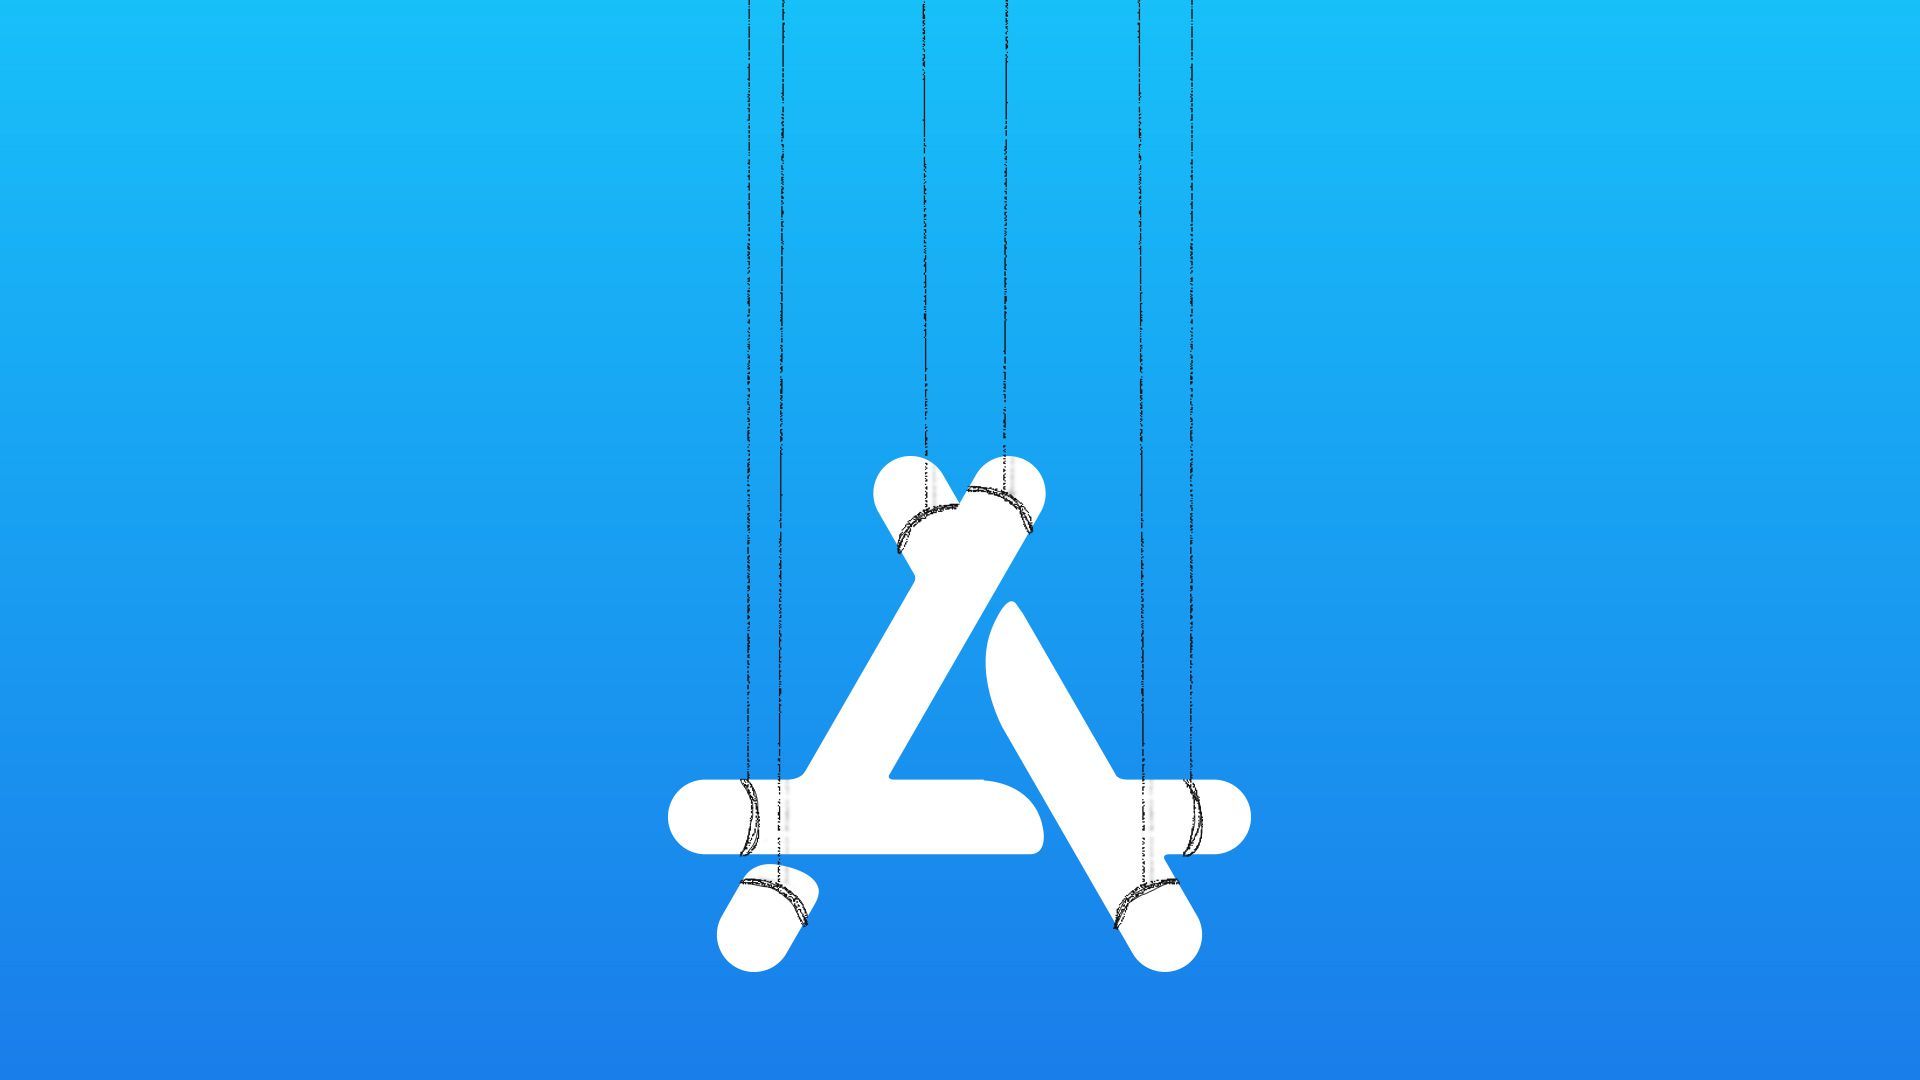 Illustration of the App Store logo on marionette strings.  